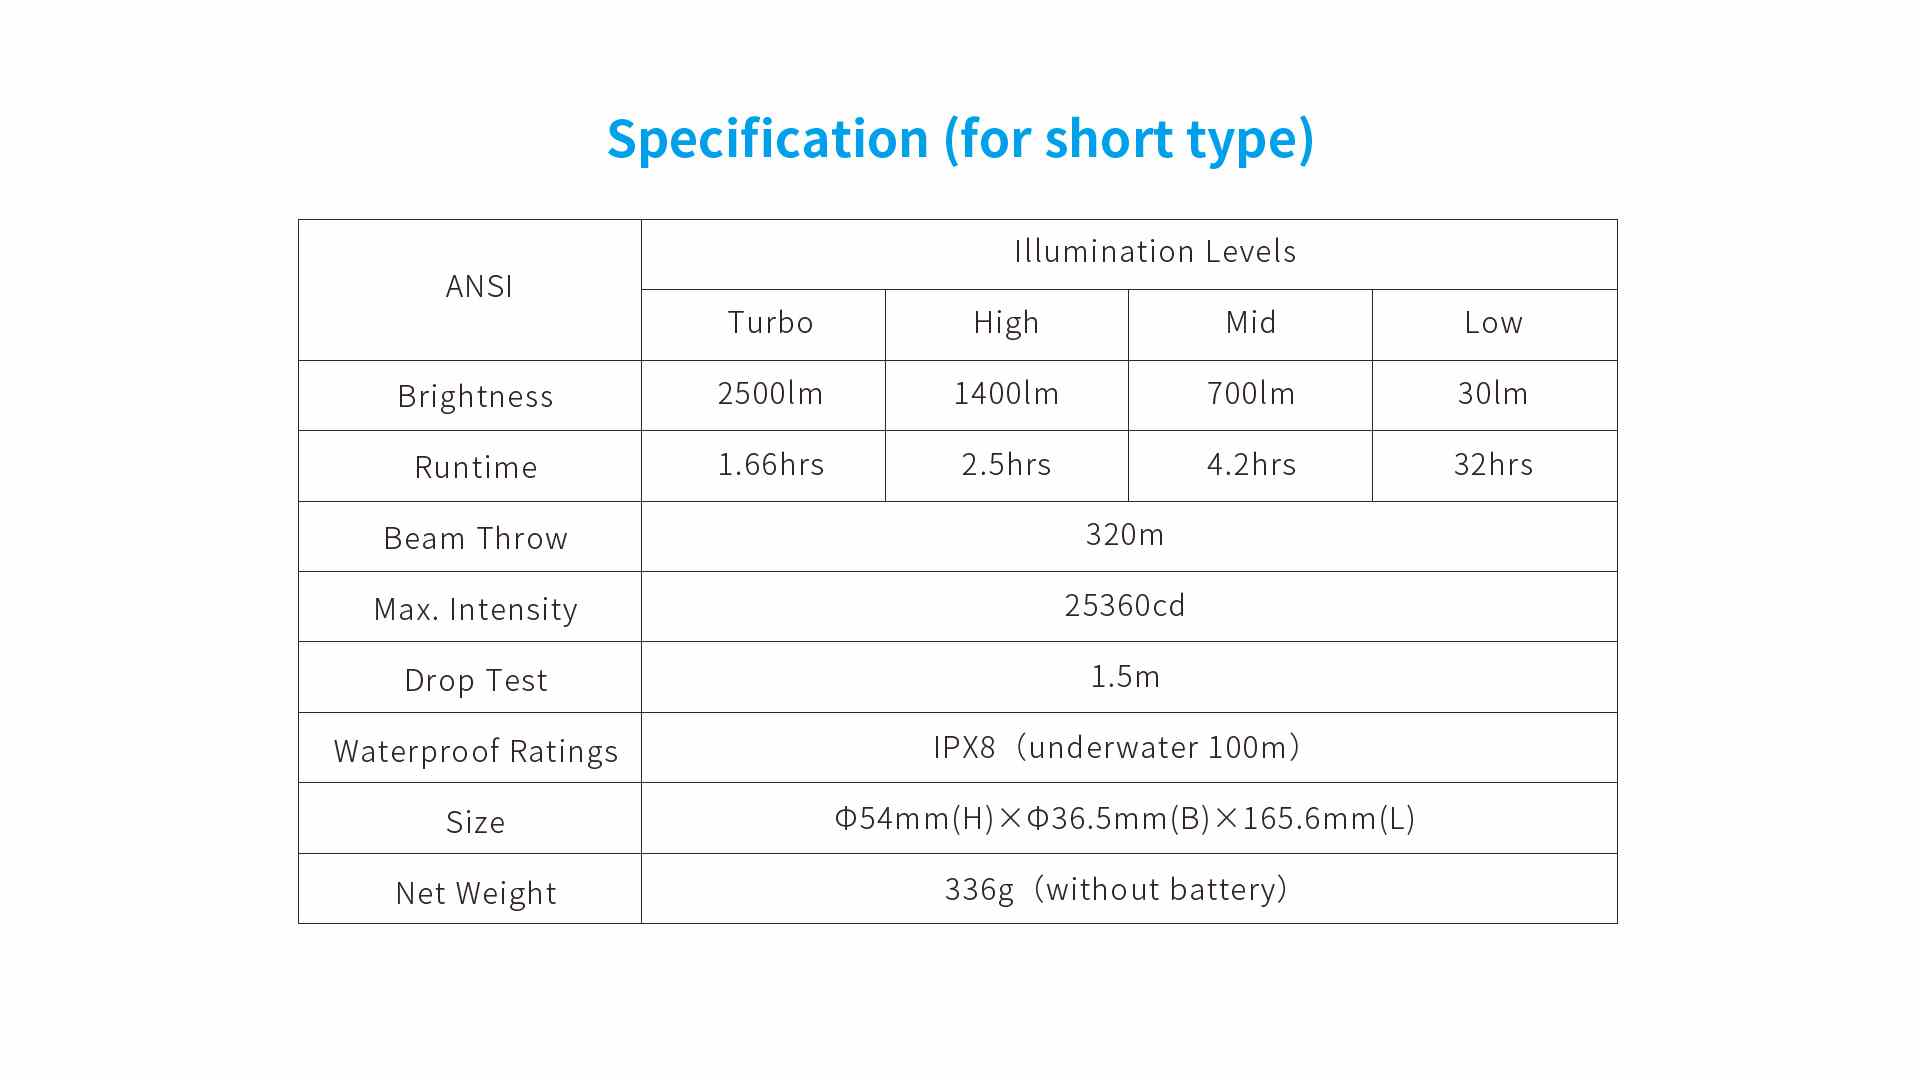 Specification / parameter for XTAR D26 2500 short version